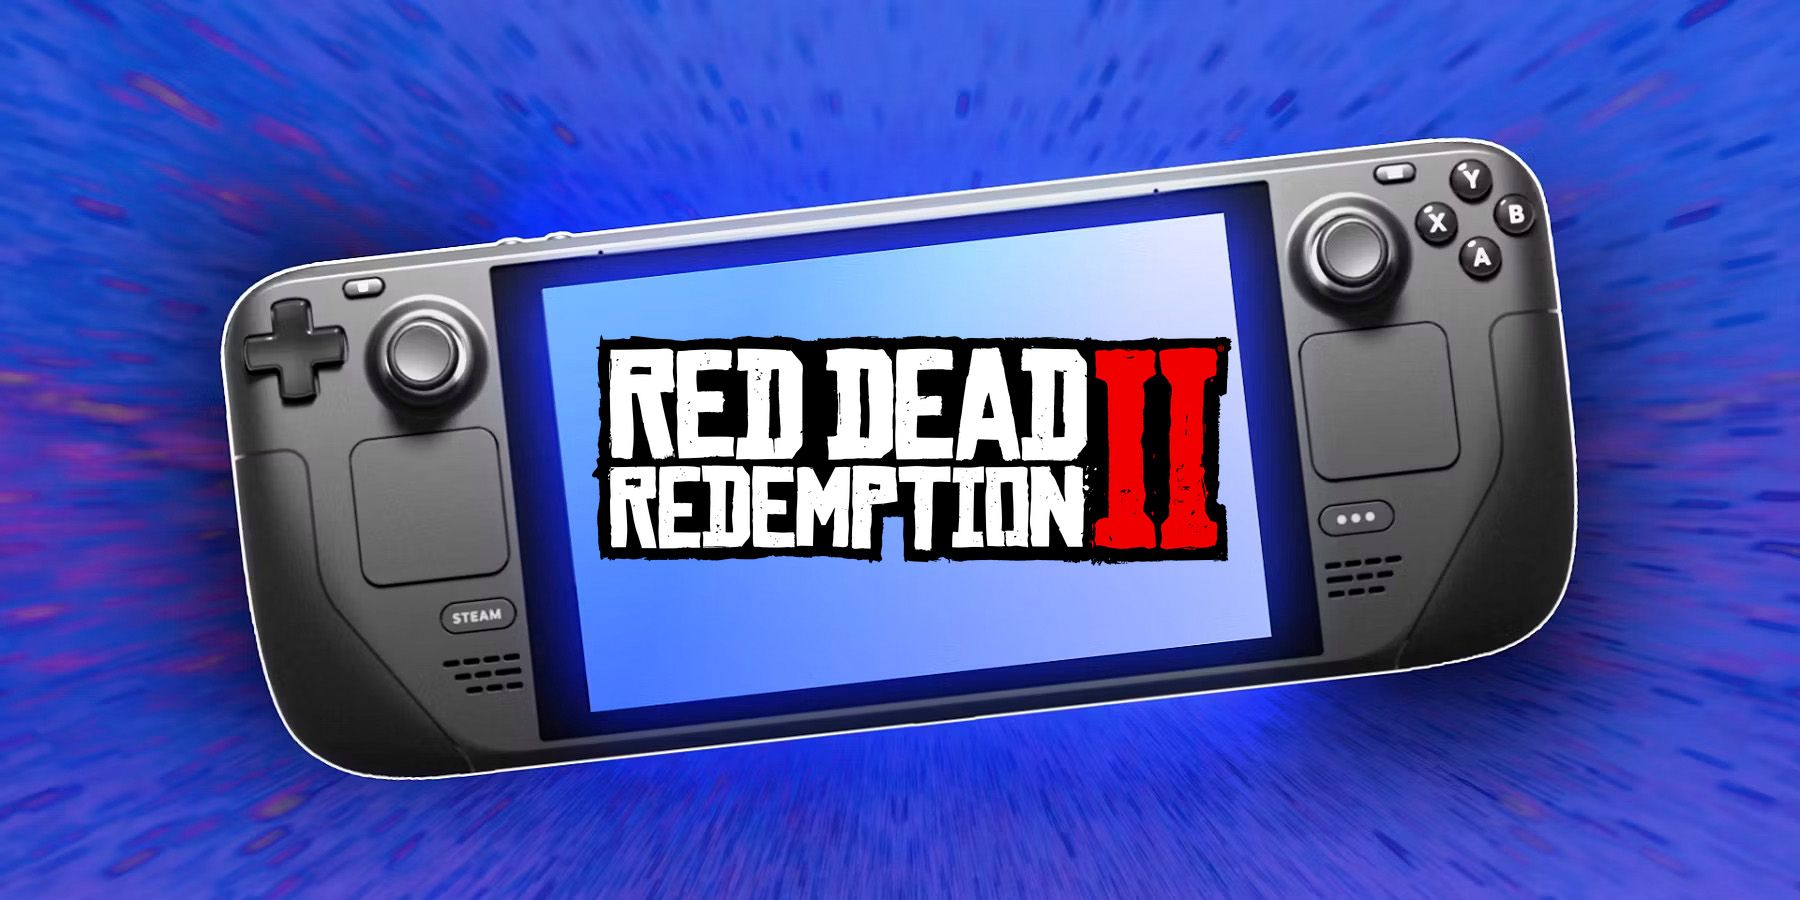 Red Dead Redemption 2 - Steam Deck HQ